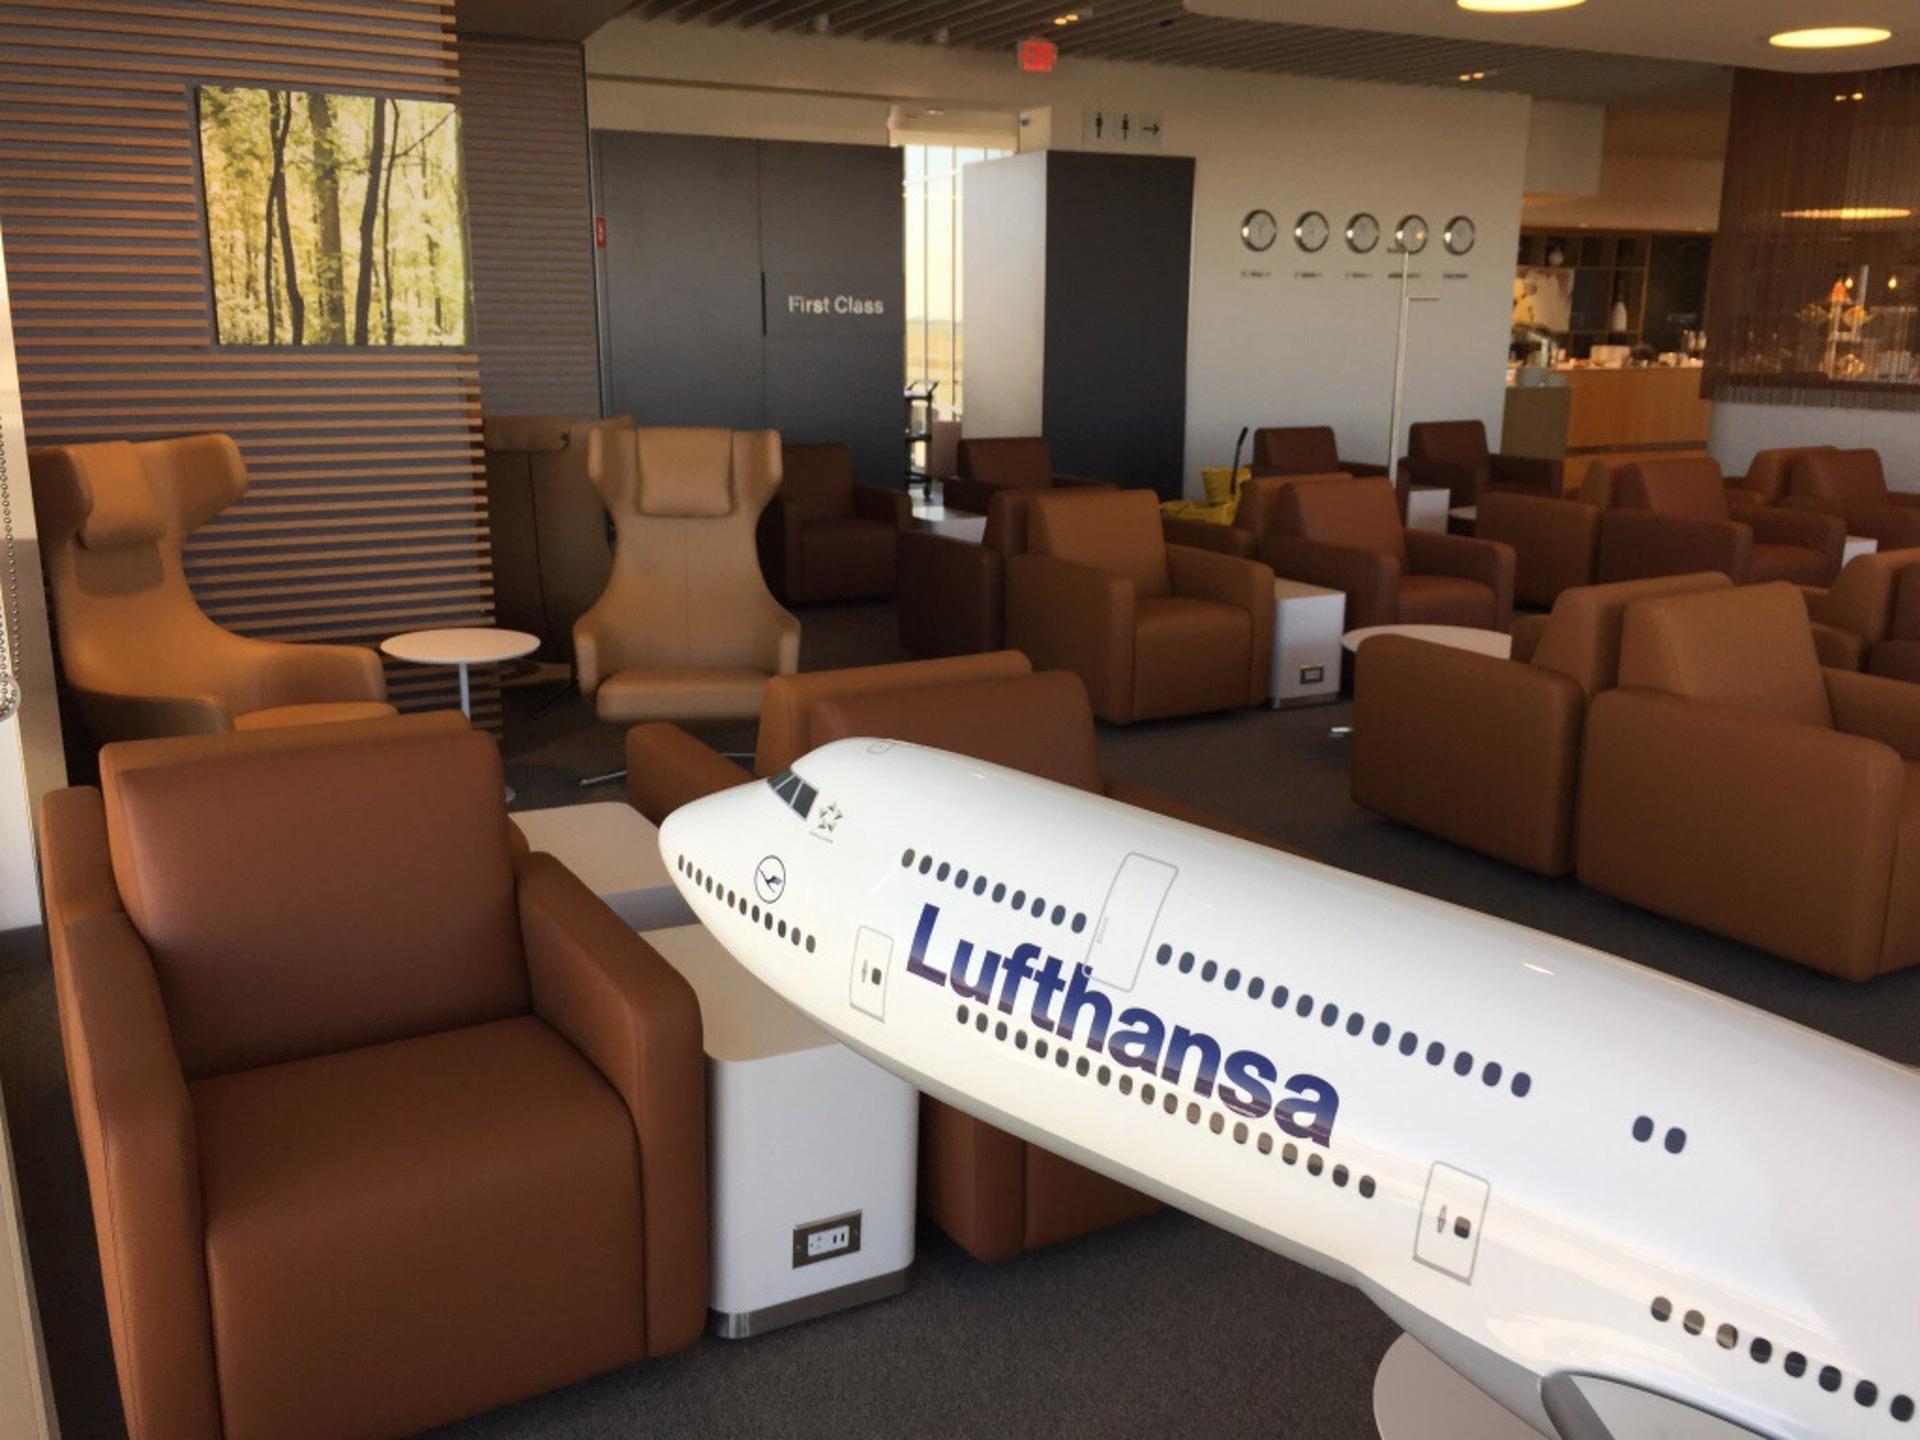 Lufthansa Lounge image 7 of 16